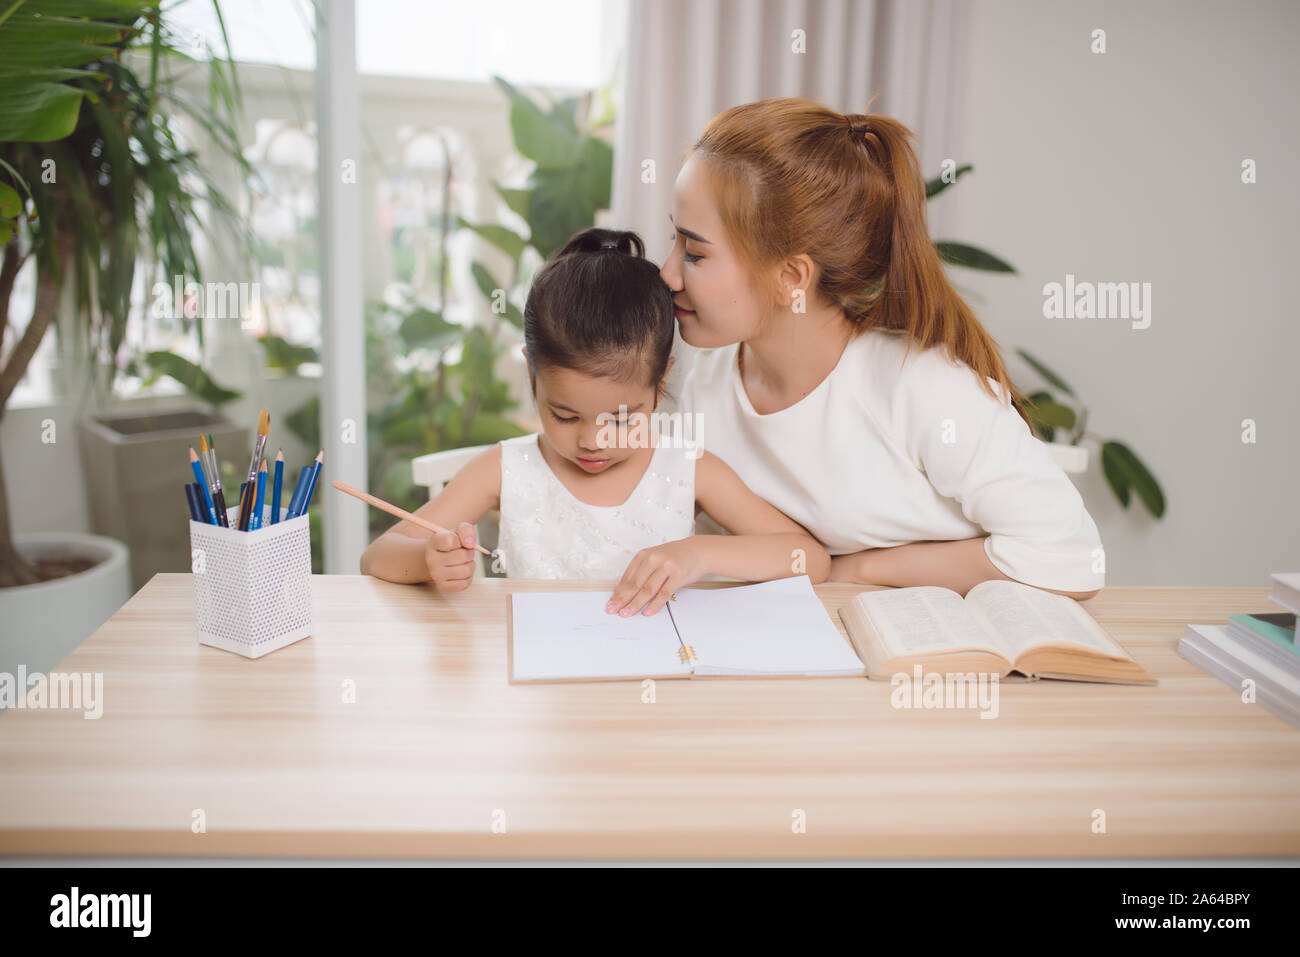 Asiatische Mutter und Tochter tun Home arbeiten zusammen im Wohnzimmer Stockfoto